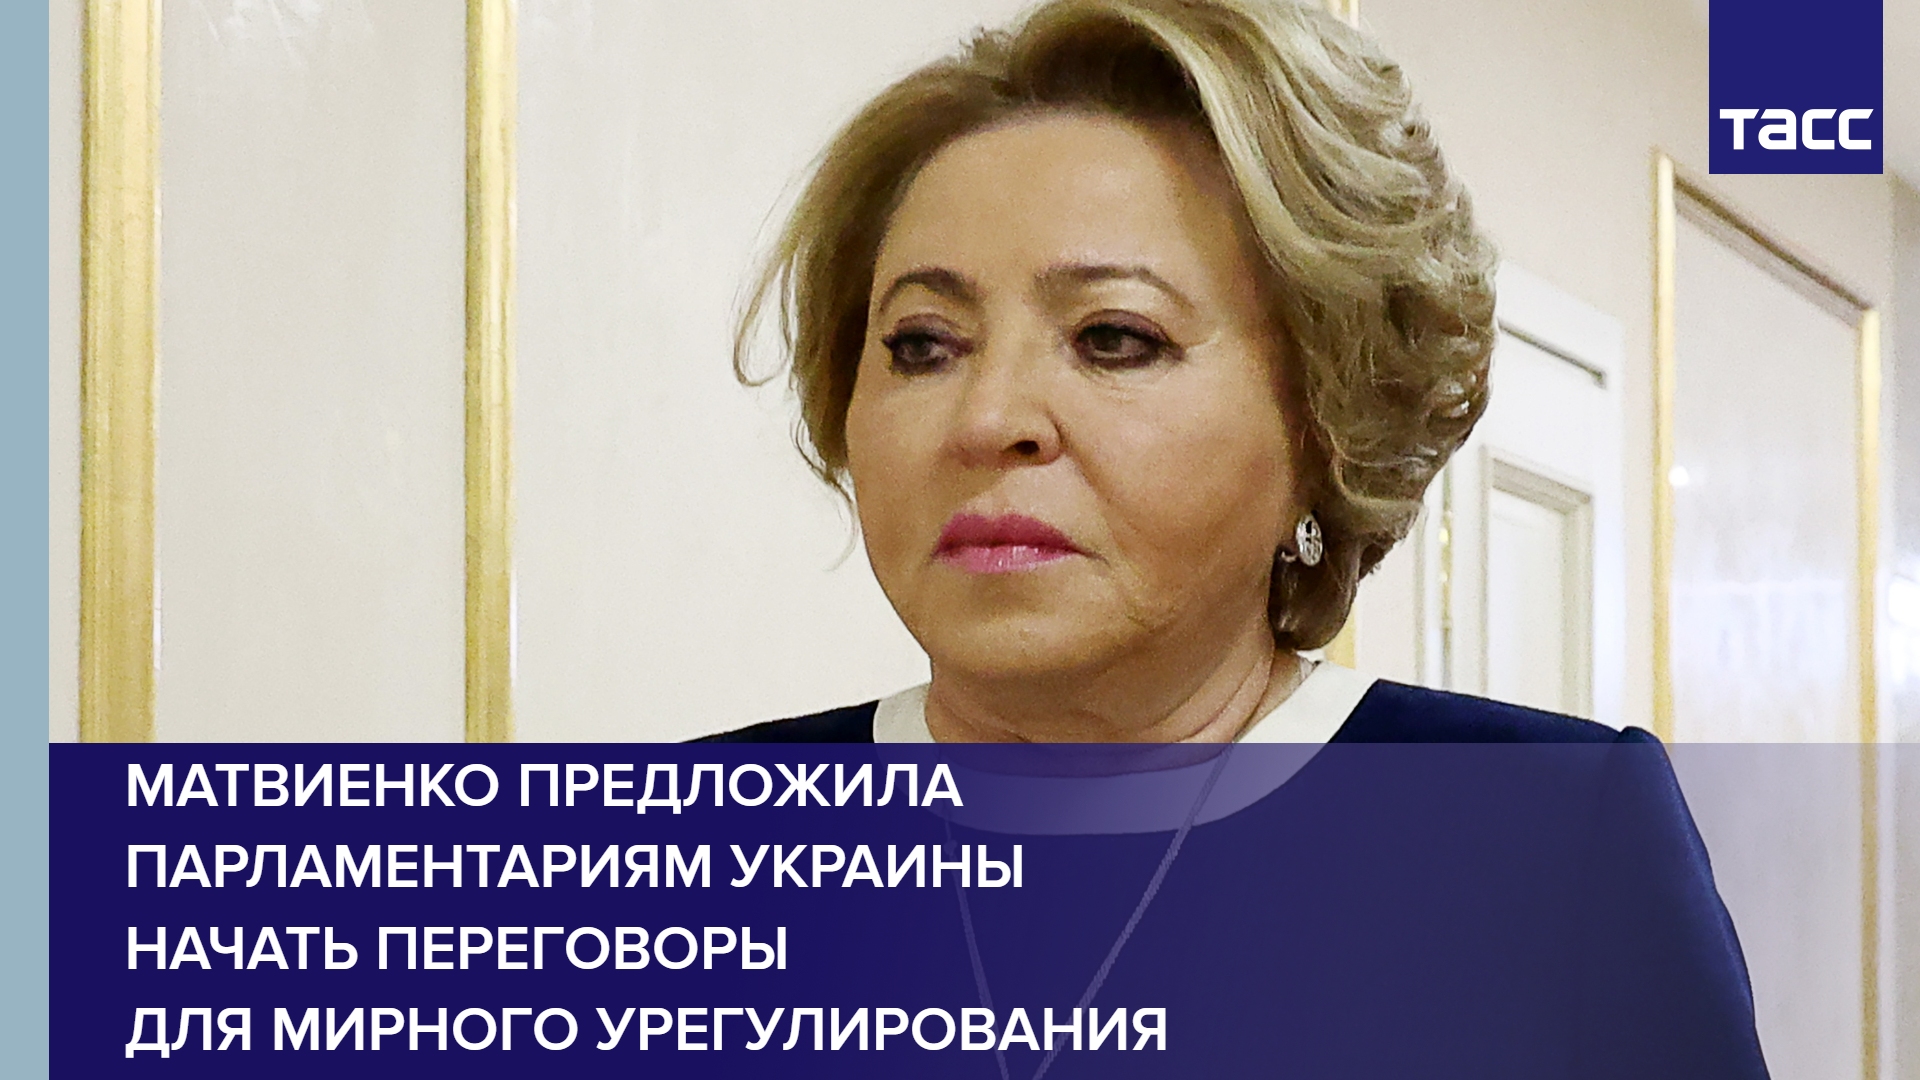 Матвиенко предложила парламентариям Украины начать переговоры для мирного урегулирования #shorts